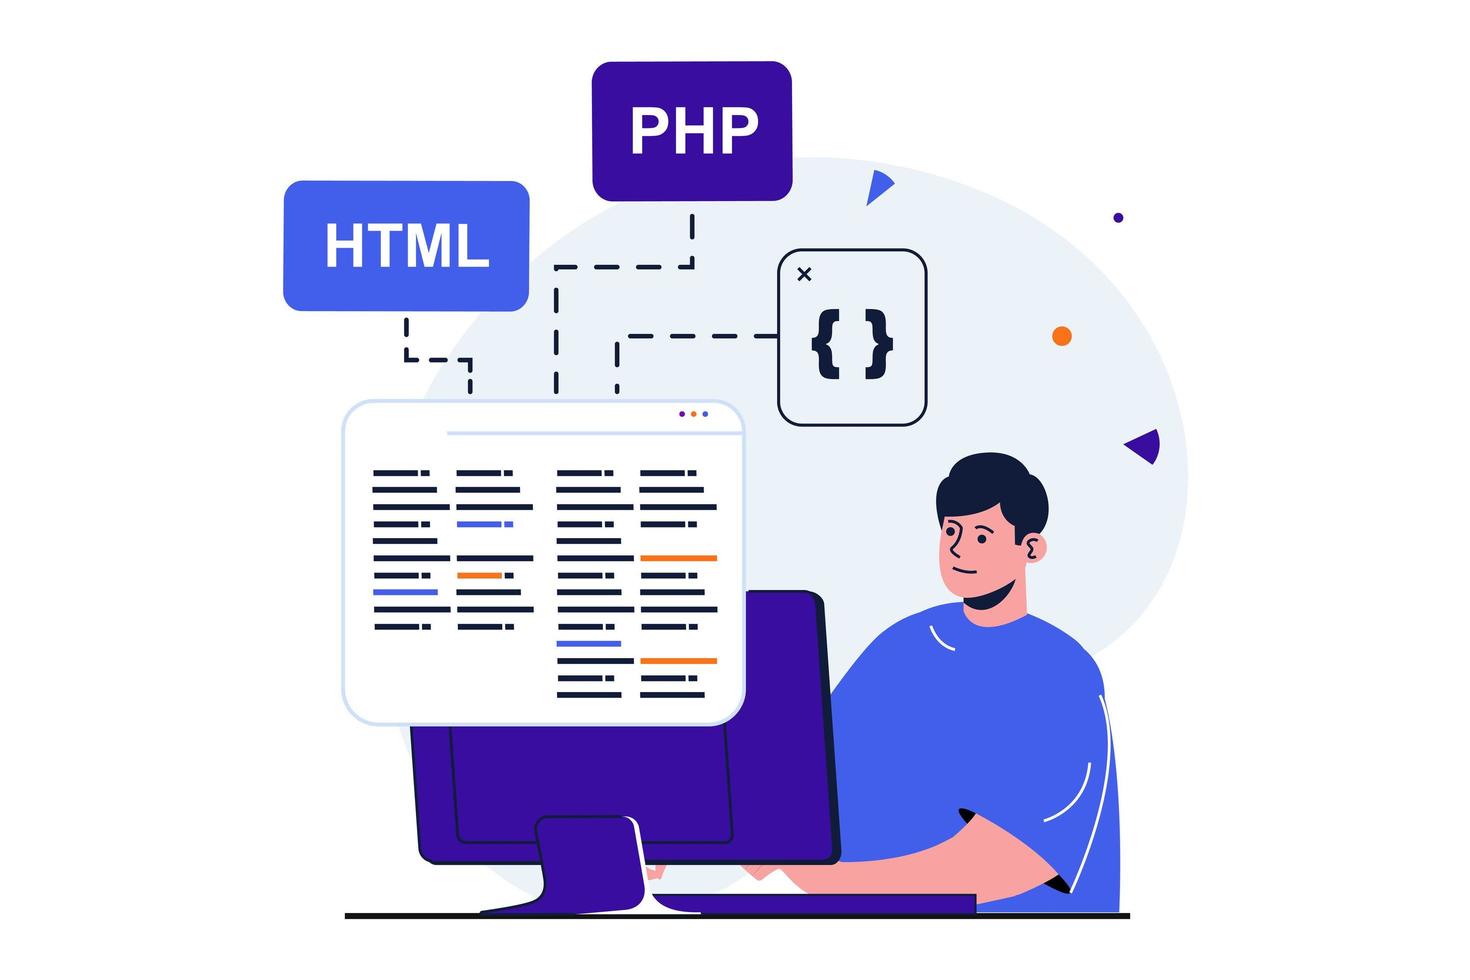 programmerare som arbetar modernt platt koncept för webbbannerdesign. man programmerar kod i html och php, testar och hittar kreativa lösningar, skapar mjukvara. vektor illustration med isolerade människor scen